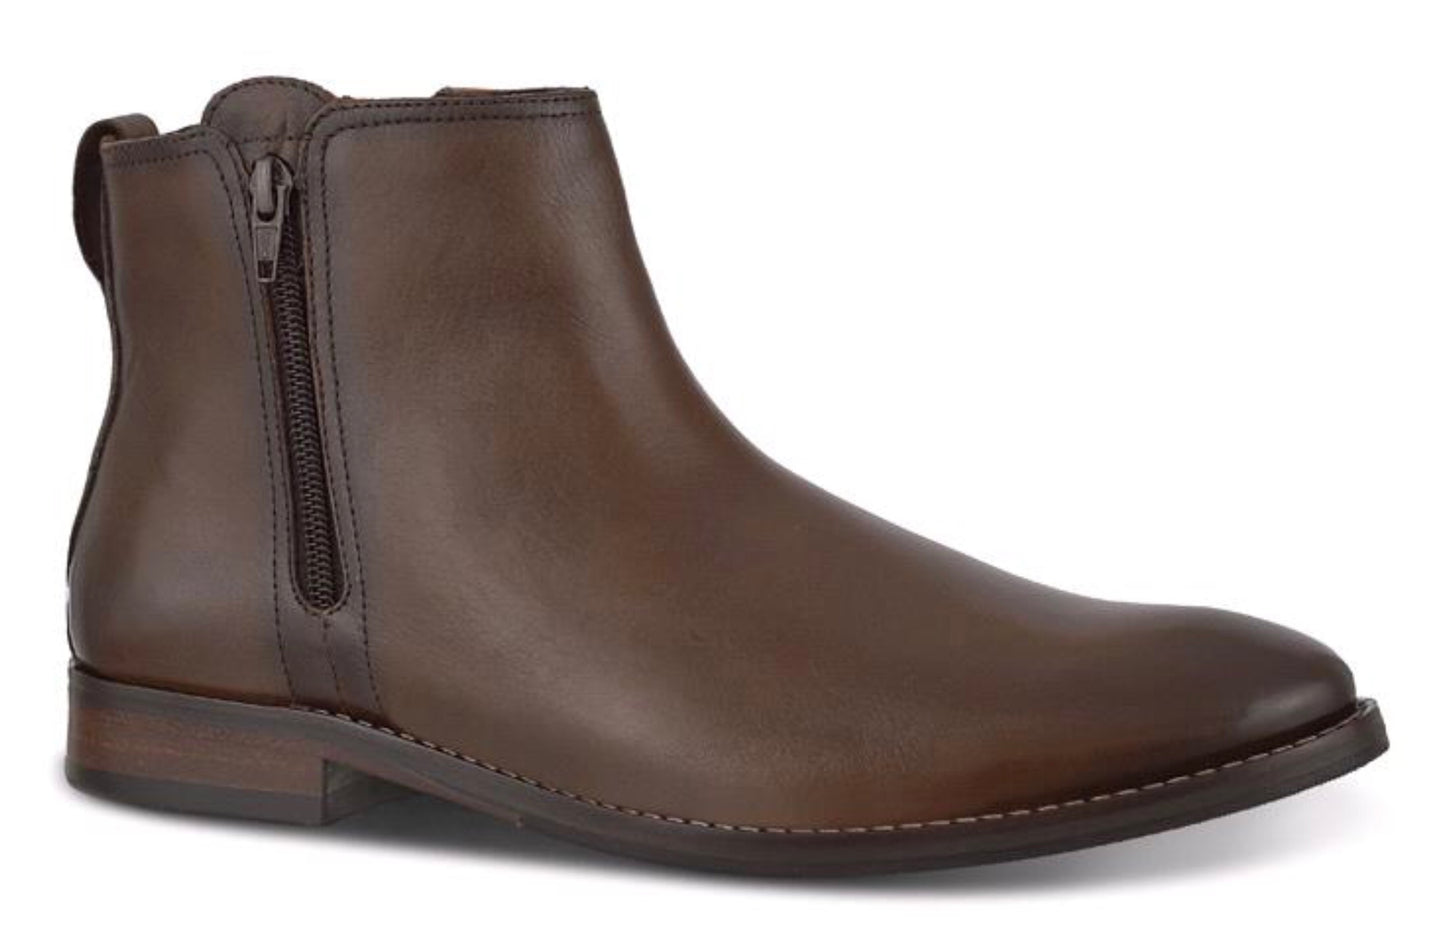 Ferracinni Caravaggio 5706 Men's Leather Boots